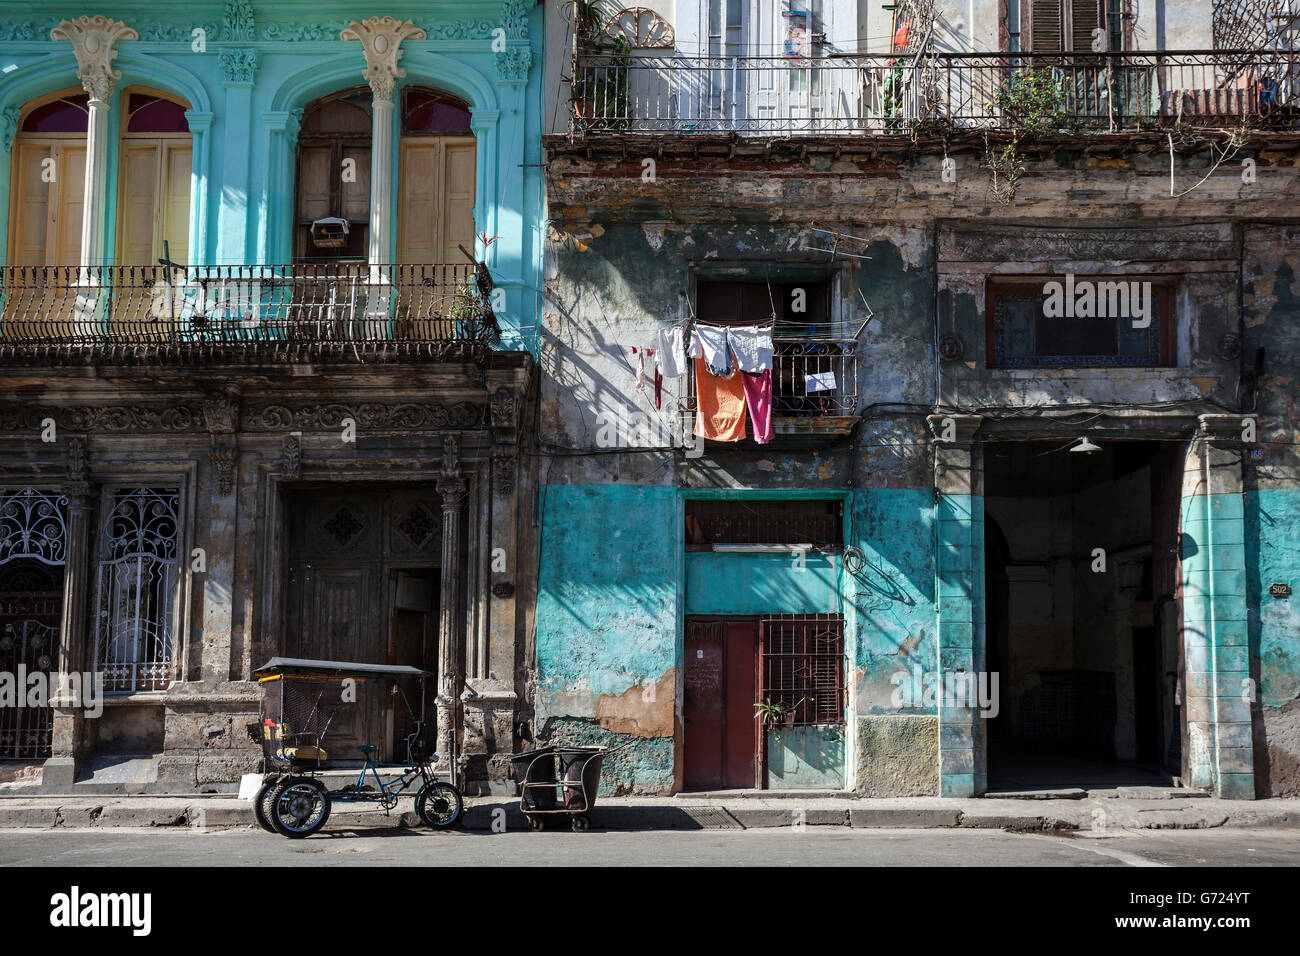 Street scenery, shabby frontages, historic centre, Havana, Cuba Stock Photo